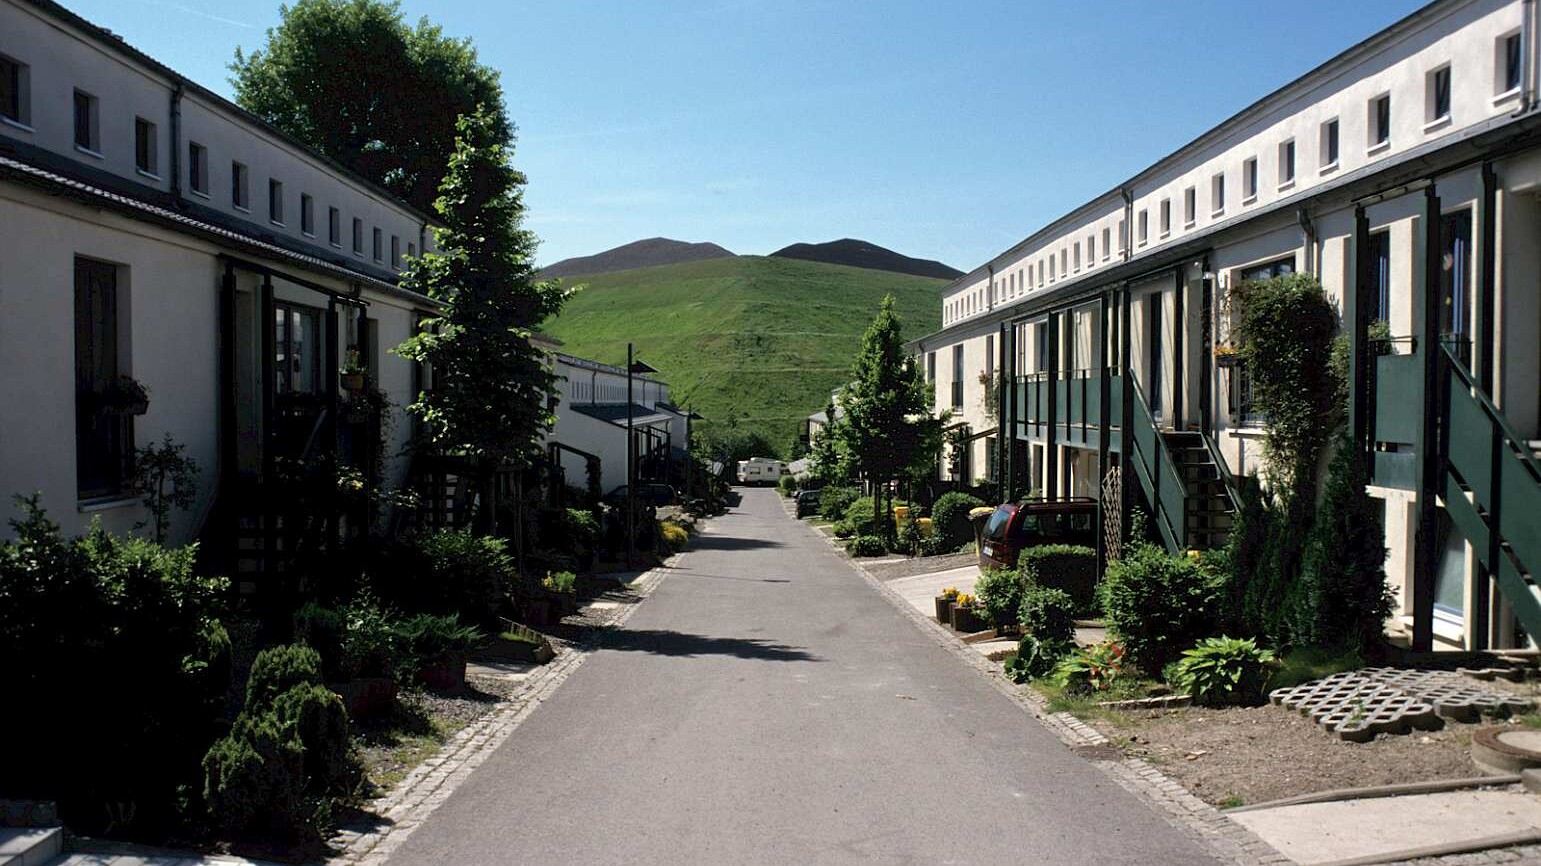 eine kleine Wohnstraße führt auf einen grünen Hügel, links und rechts helle Reihenhäuser mit Vorgärten